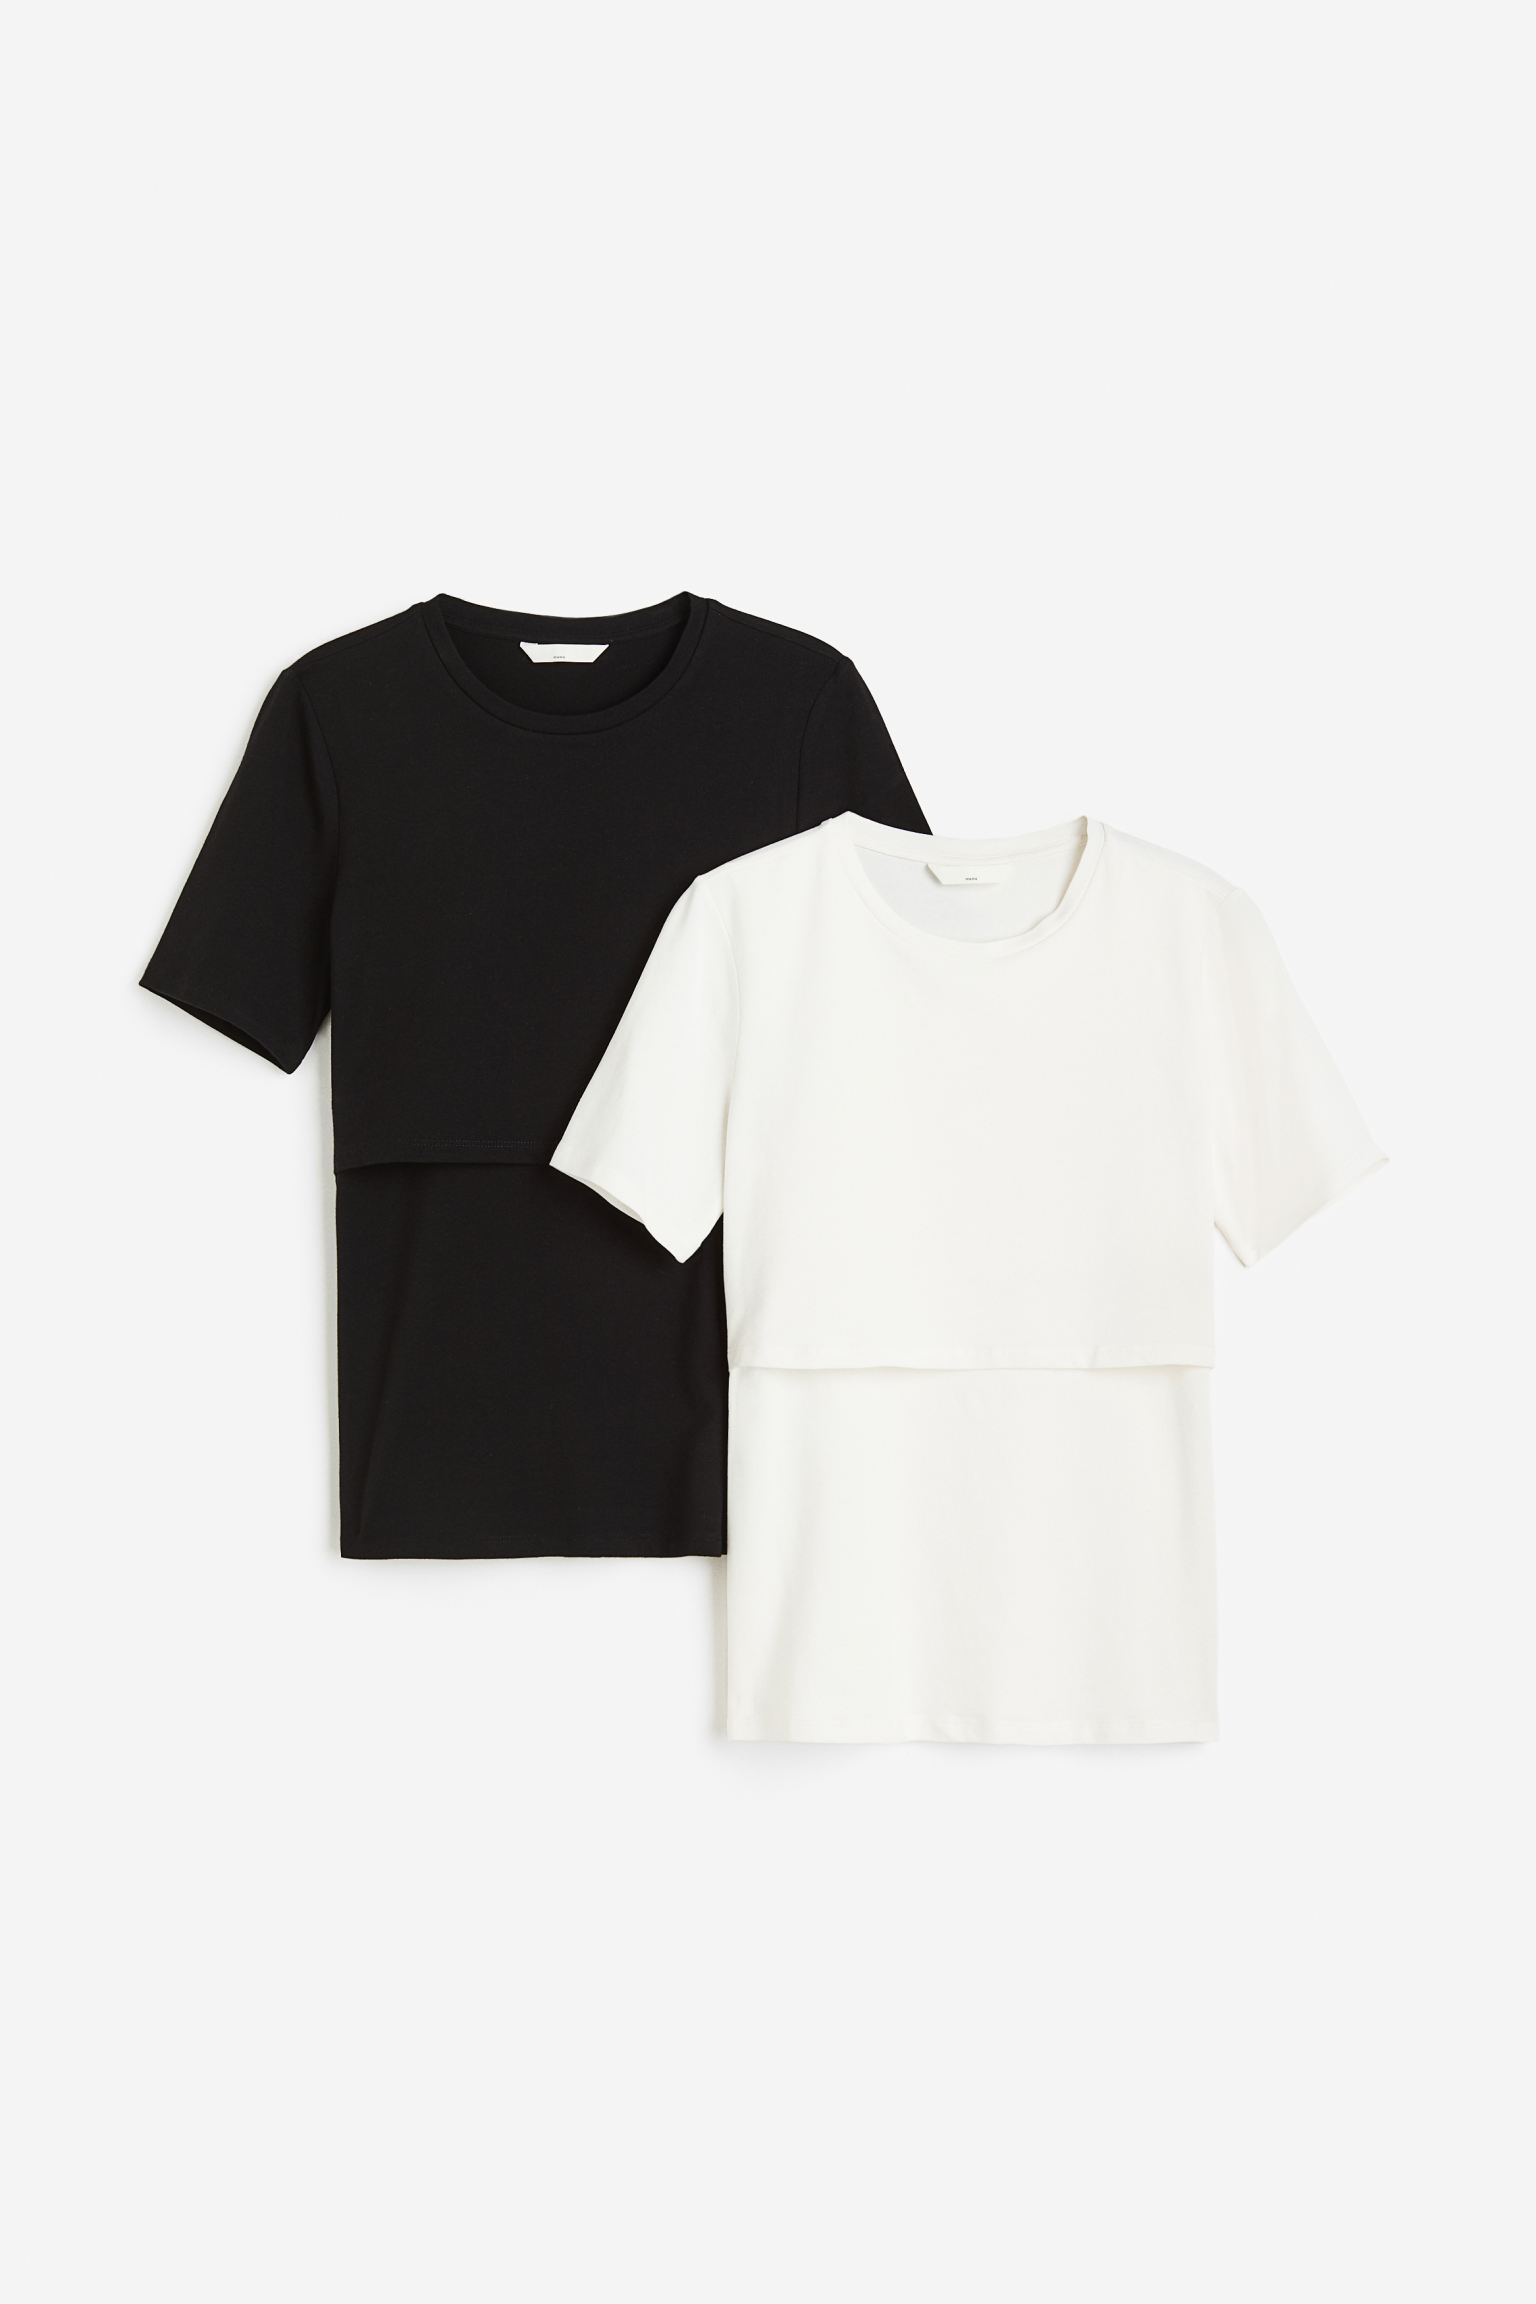 Комплект футболок женских H&M 1175052002 черных XS (доставка из-за рубежа)